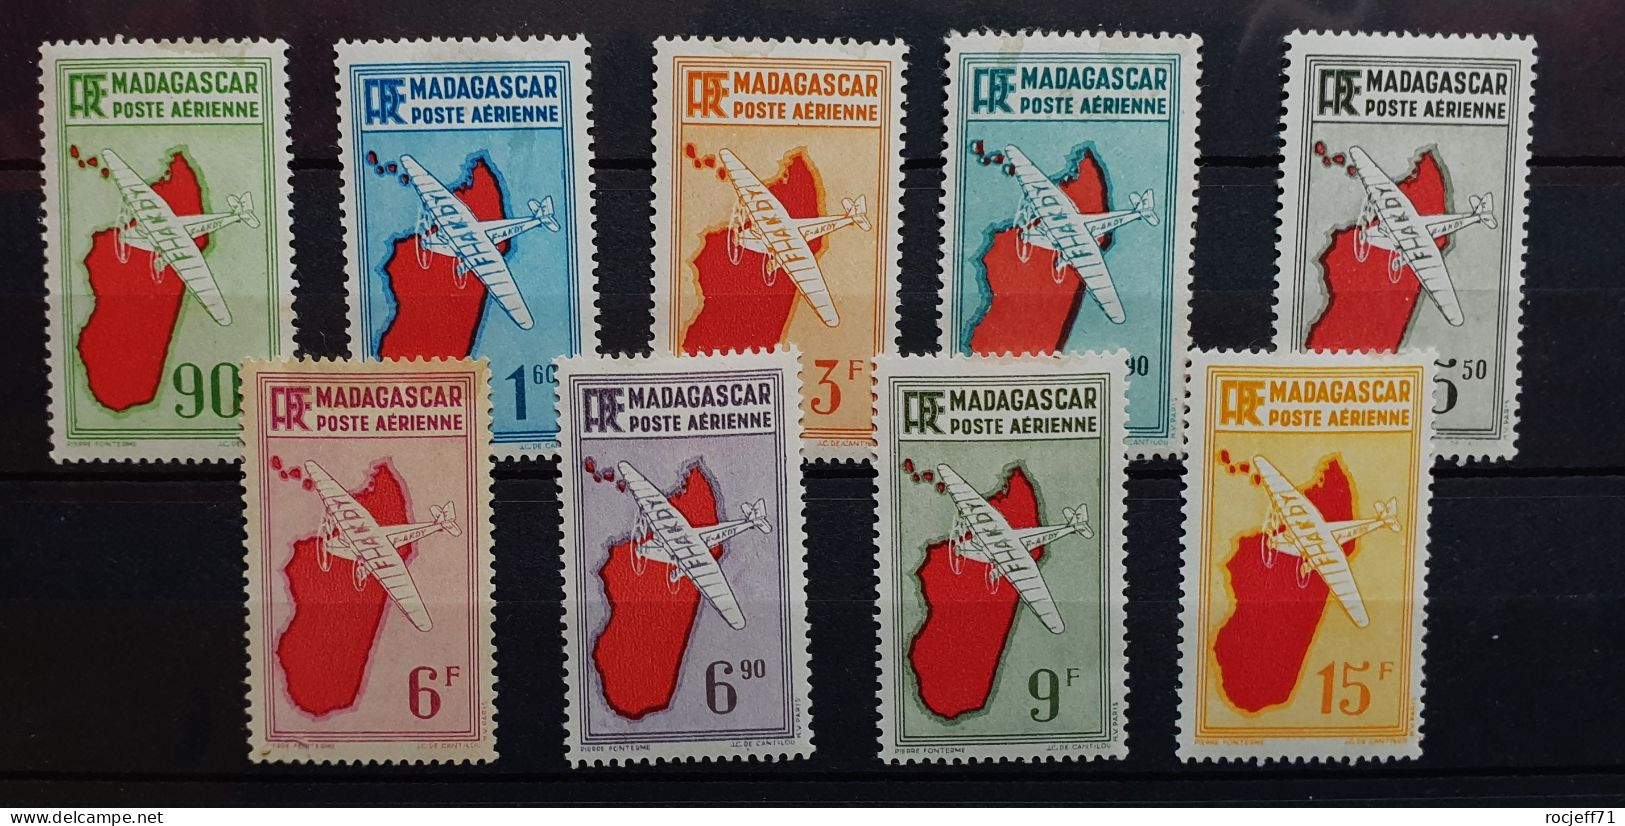 04 - 24 - Madagascar - Poste Aérienne N°16 à 24 * - MH - Série Complète - Aéreo